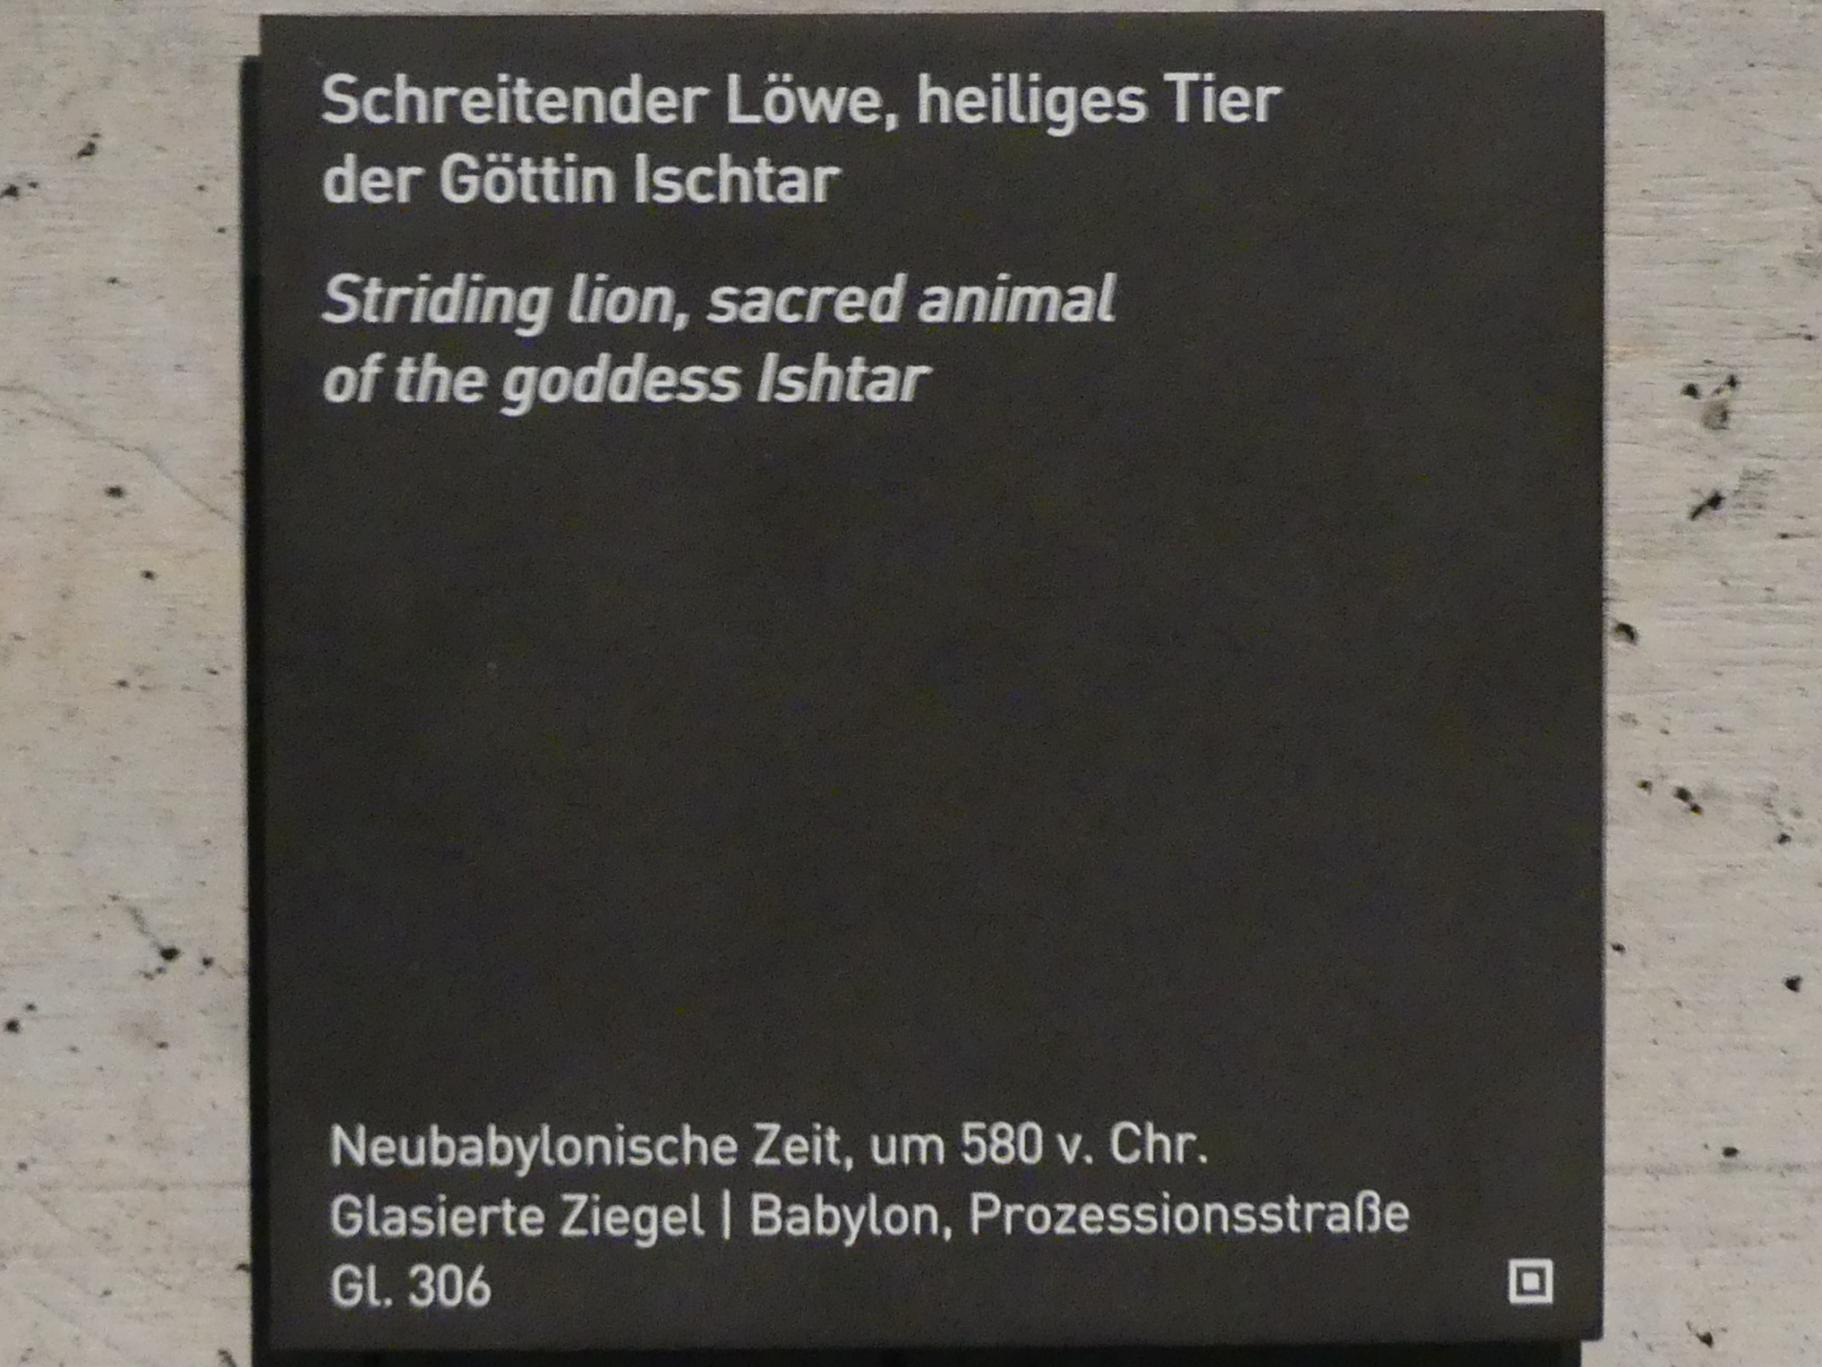 Schreitender Löwe, heiliges Tier der Göttin Ischtar, Neubabylonische Zeit, 600 - 400 v. Chr., 580 v. Chr., Bild 2/2